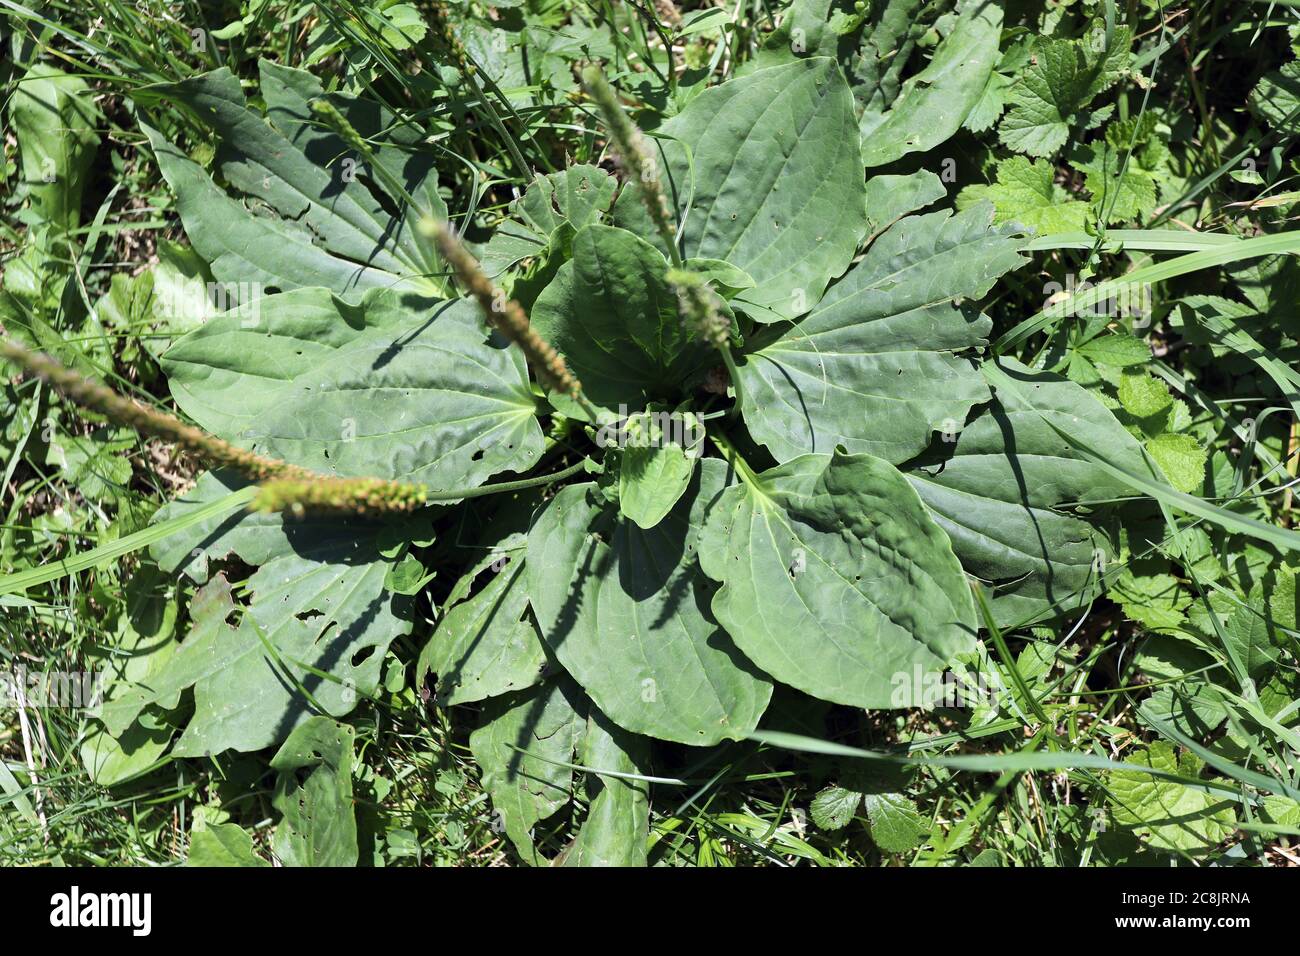 Plantago, Greater plantain (Plantago major) or fleaworts. Plantago is a genus plant. Stock Photo